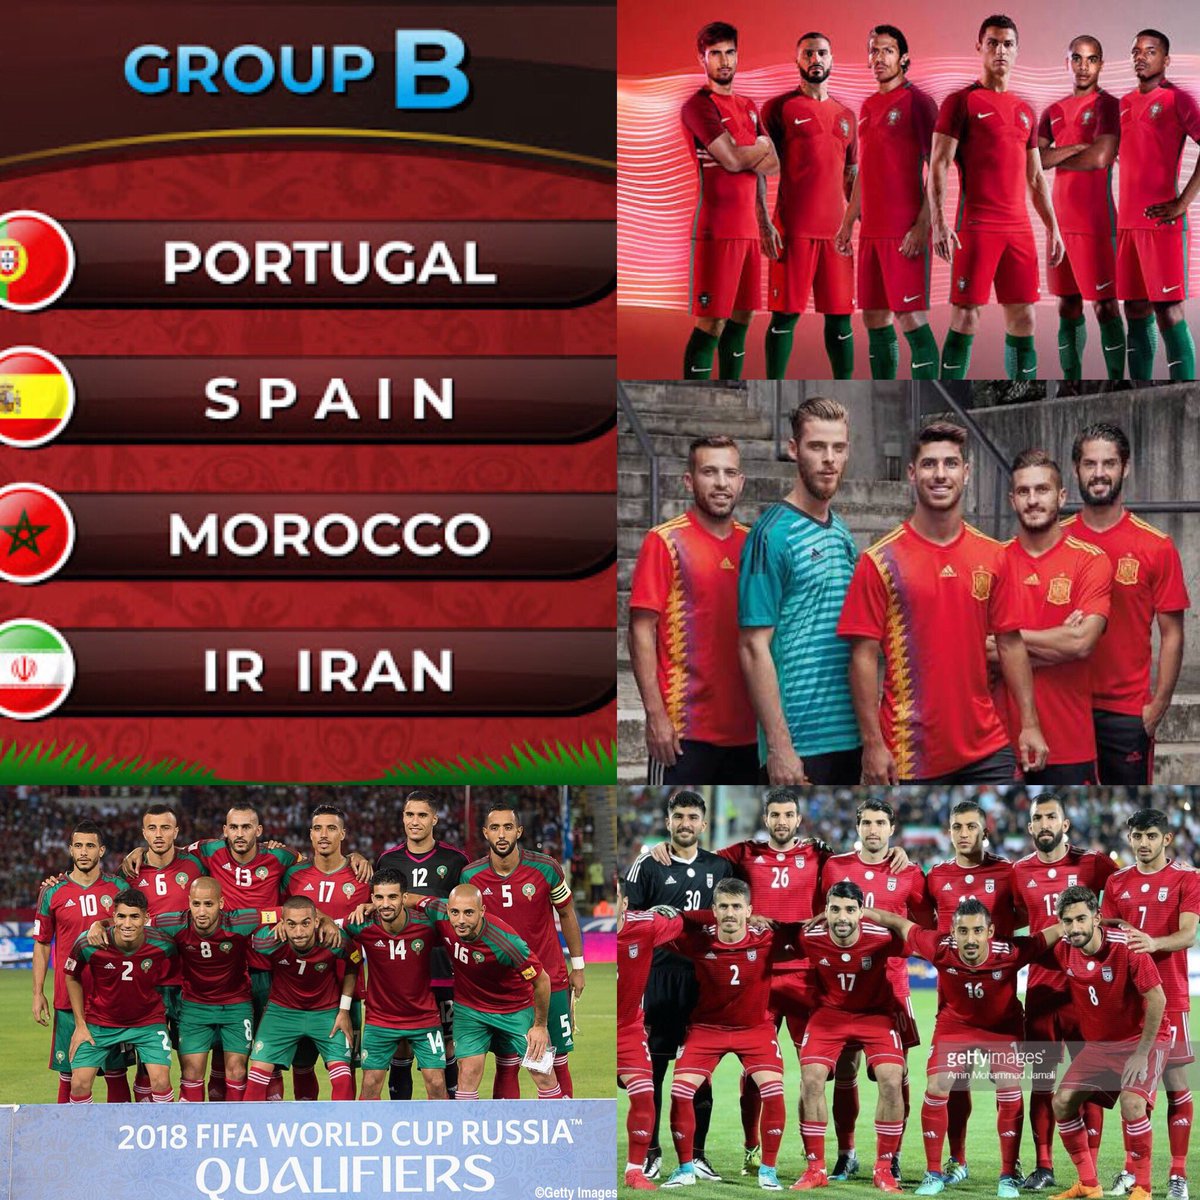 佐藤広大 Fifa World Cuprussia 18 グループbが とりあえず赤い ポルトガル スペイン モロッコ イラン ワールドカップ グループb ユニフォーム アウェイは白 ワールドカップ W杯 ロシア対大会 T Co X9uflklyxs